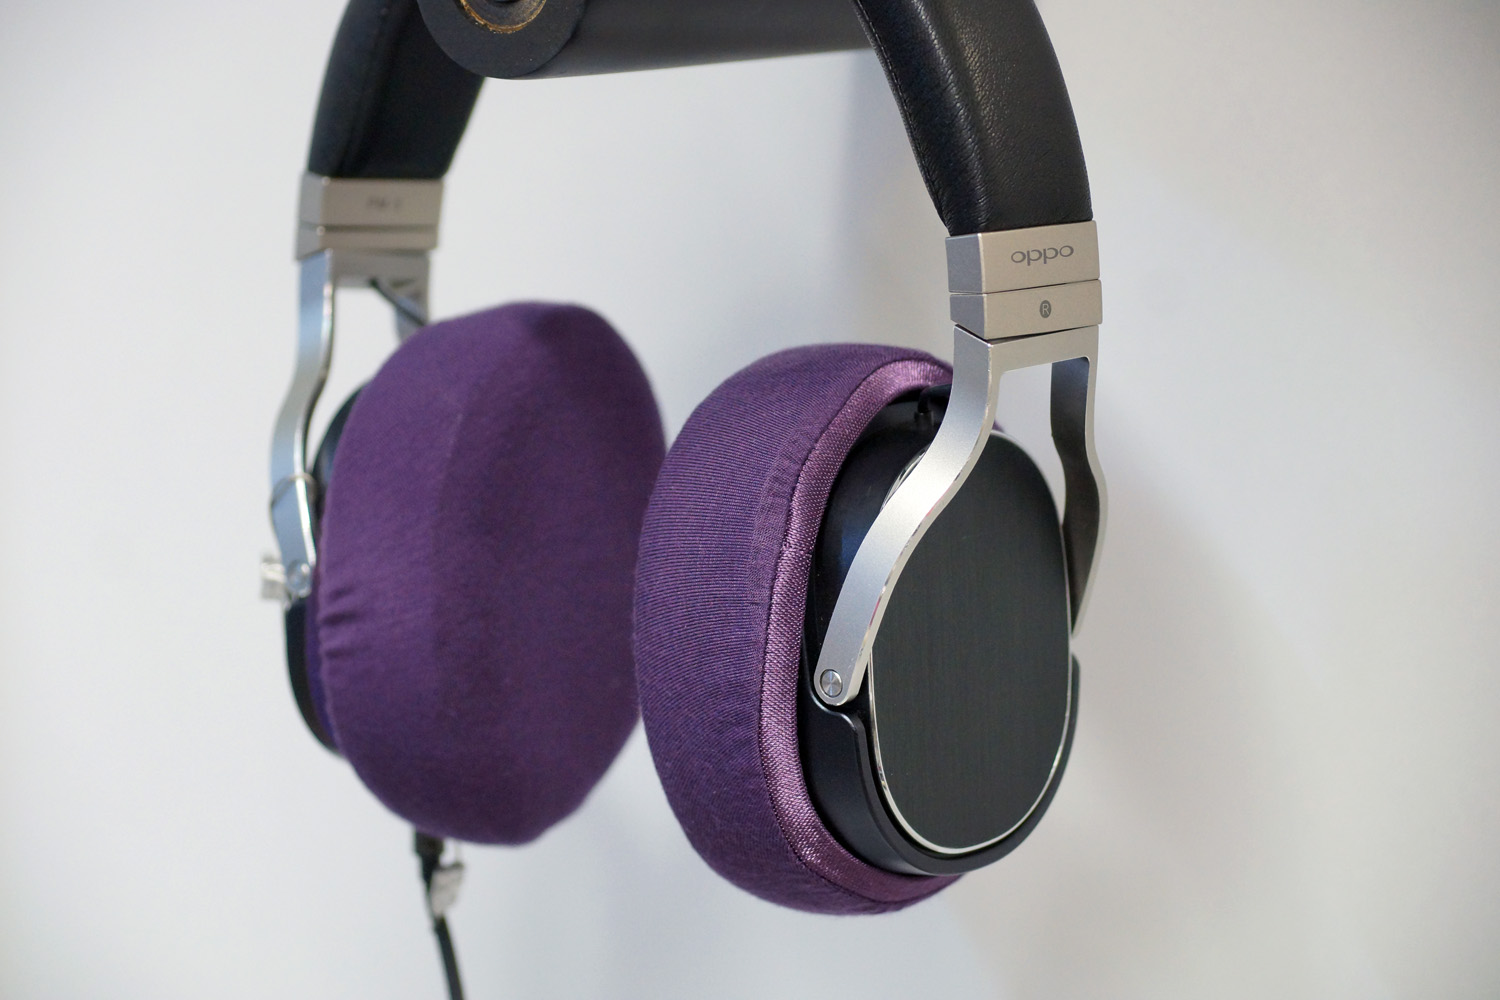 Nuevos auriculares OPPO PM-3, modelo de acceso a la marca, ya disponibles